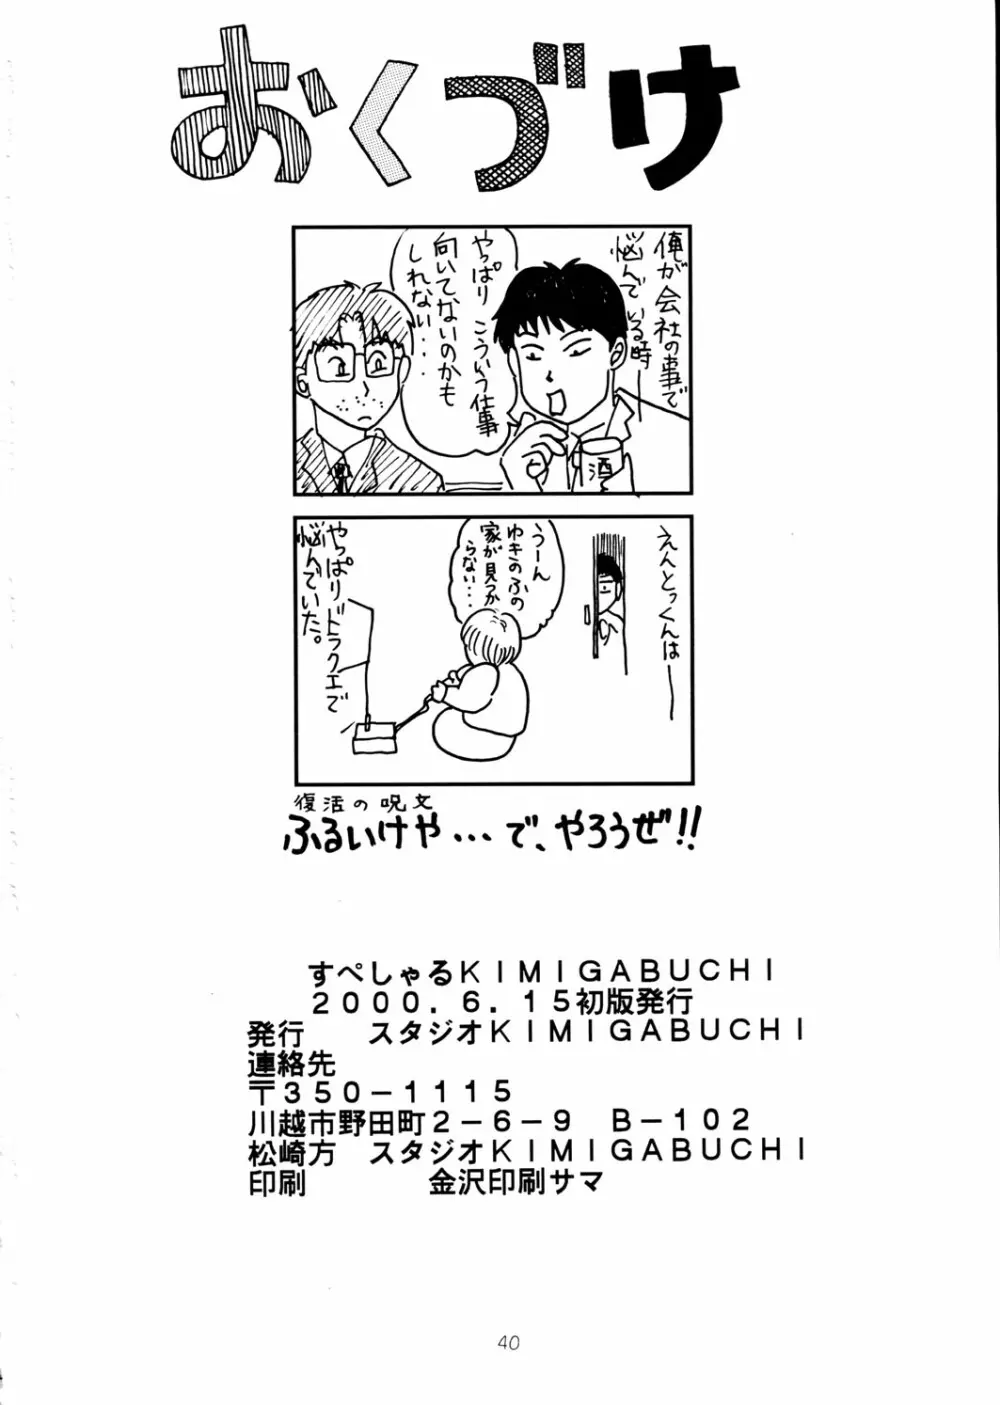 すぺしゃる KIMIGABUCHI 2000年 SUMMER PROTOTYPE 40ページ